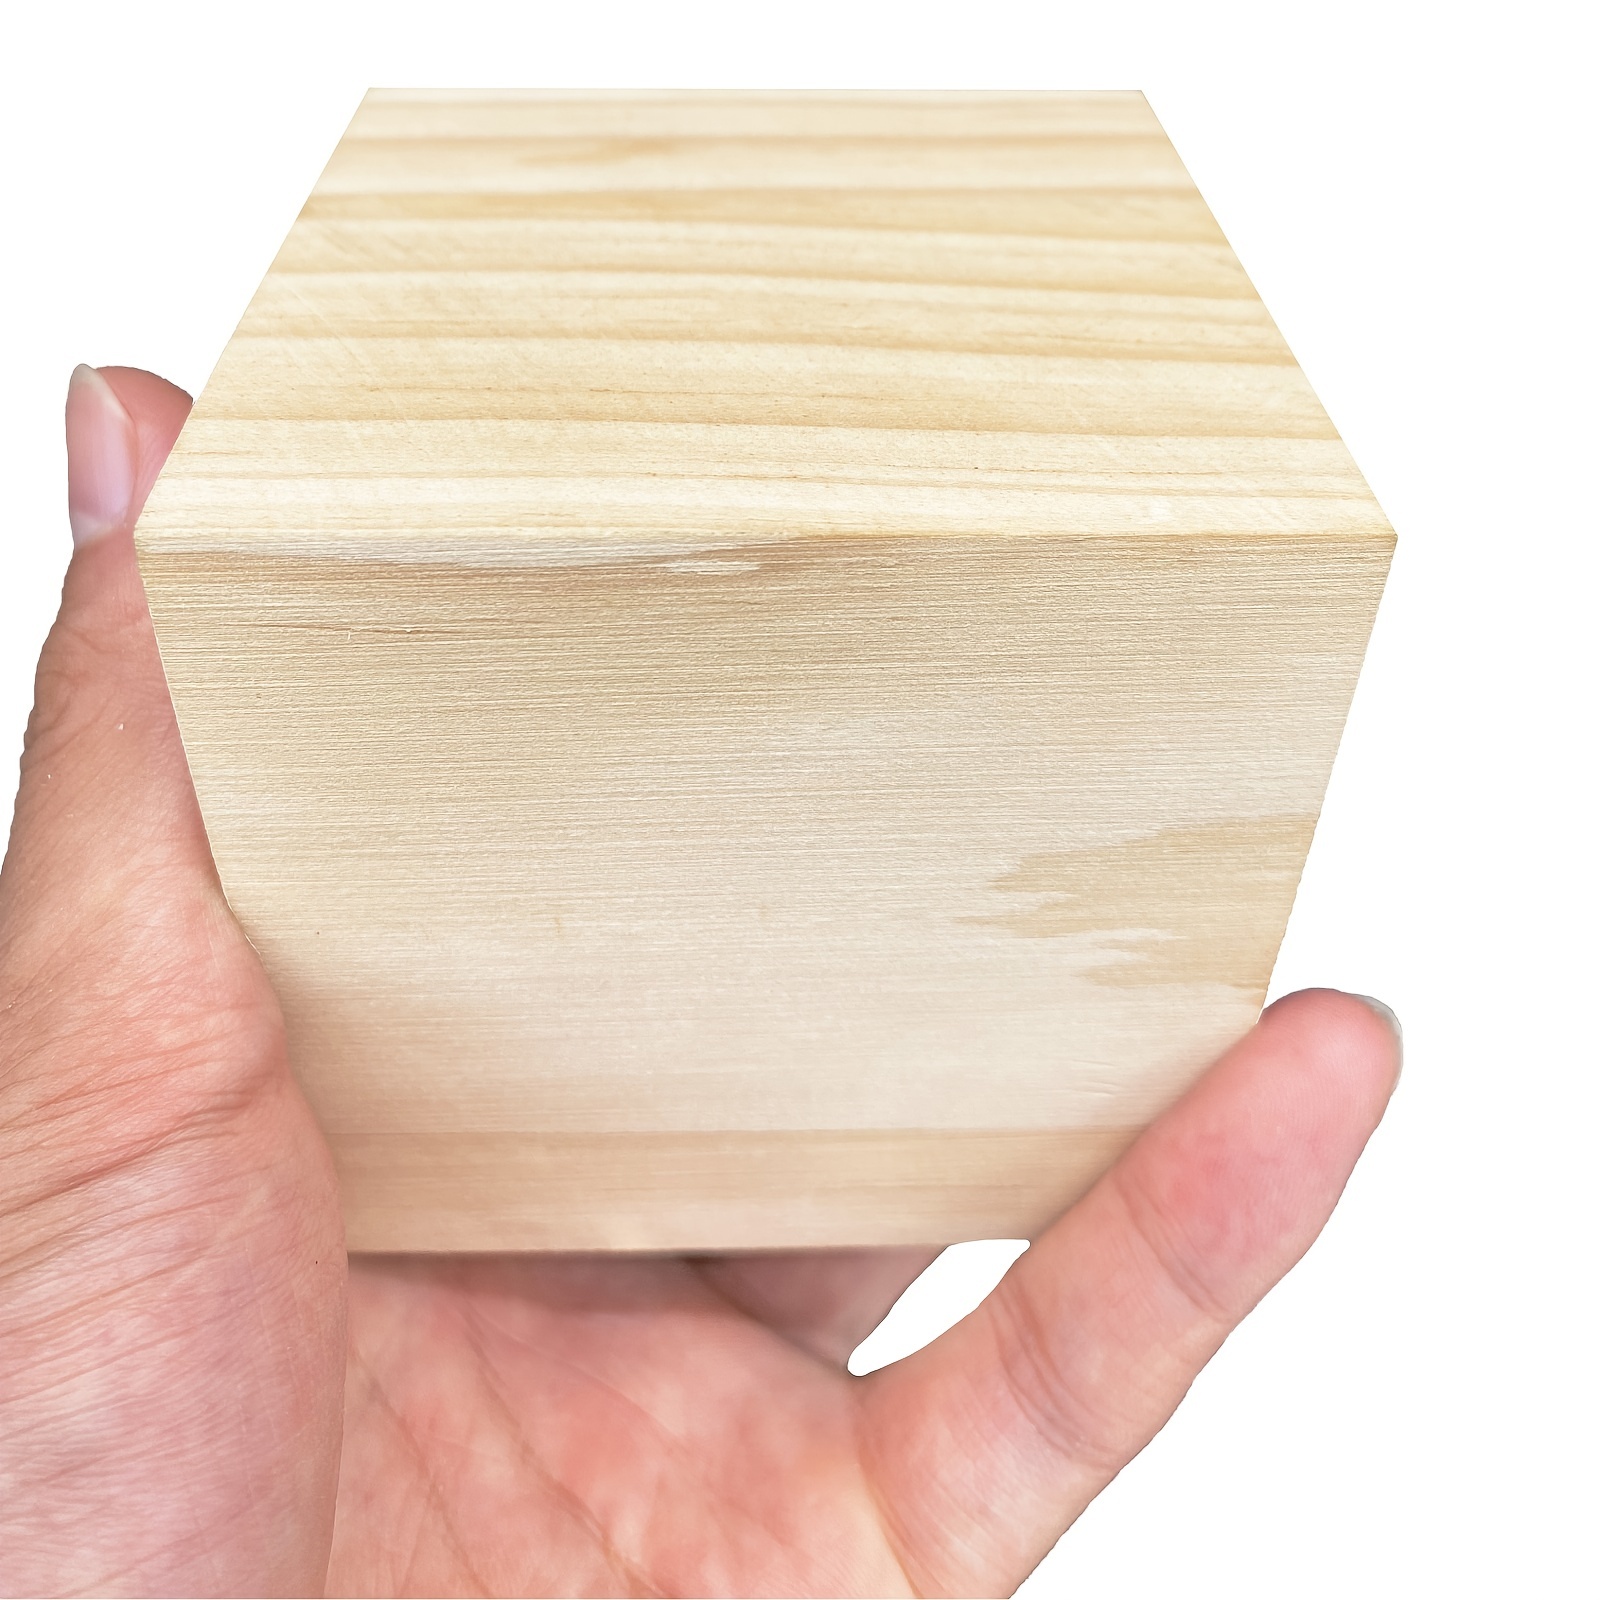 BUYGO O - 50 cubos de madera de 1.5 pulgadas, bloques de madera sin  terminar para manualidades de madera, cubos de madera, bloques cuadrados de  madera